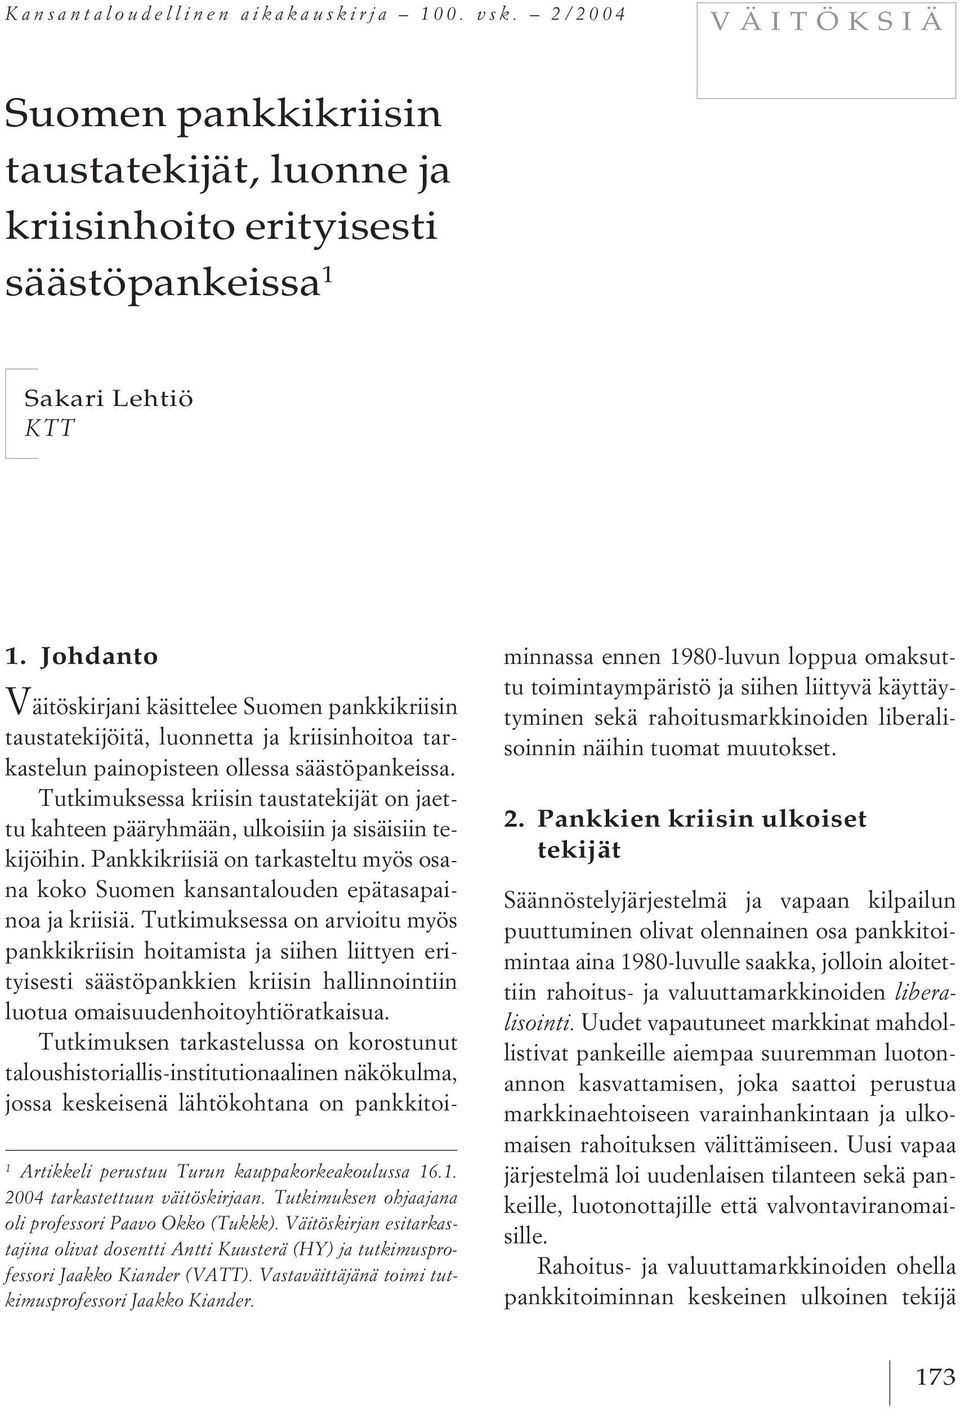 Tutkimuksen ohjaajana oli professori Paavo Okko (Tukkk). Väitöskirjan esitarkastajina olivat dosentti Antti Kuusterä (HY) ja tutkimusprofessori Jaakko Kiander (VATT).